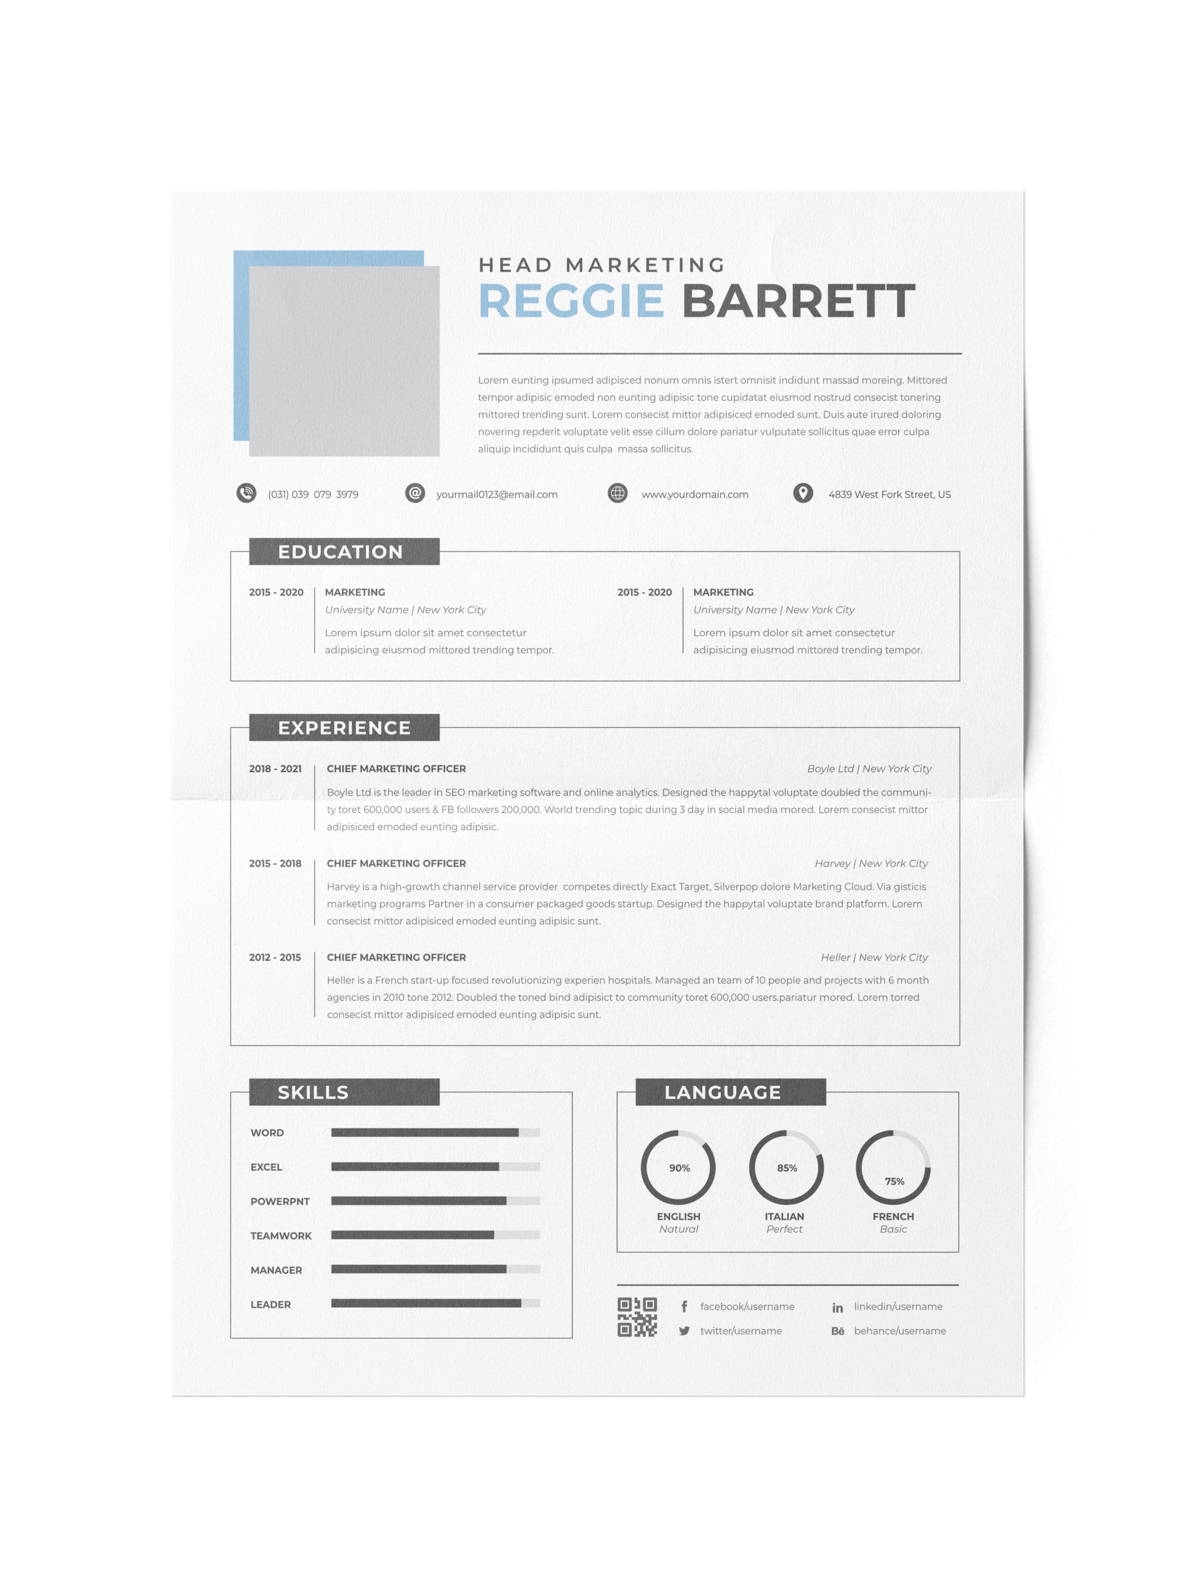 CV #162 Reggie Barrett